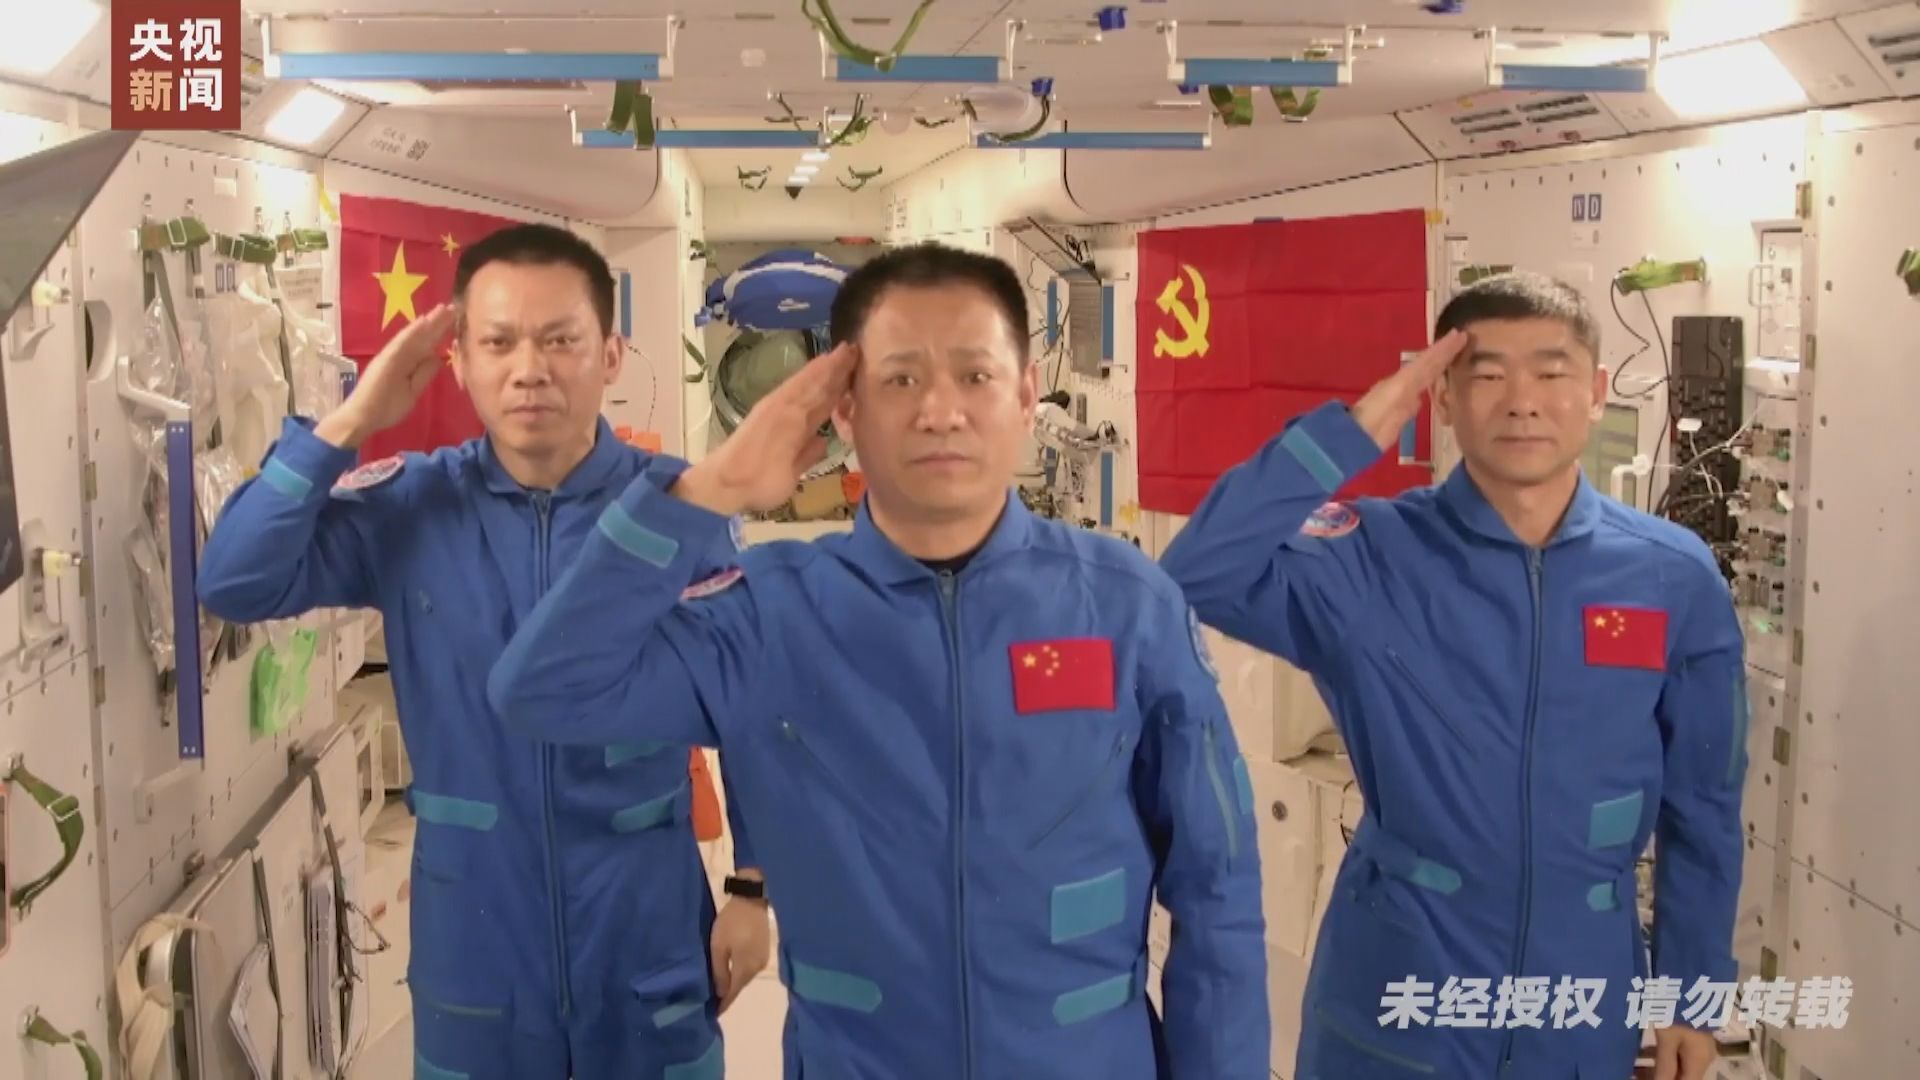 神舟十二號太空人發影片祝賀中共百周年黨慶